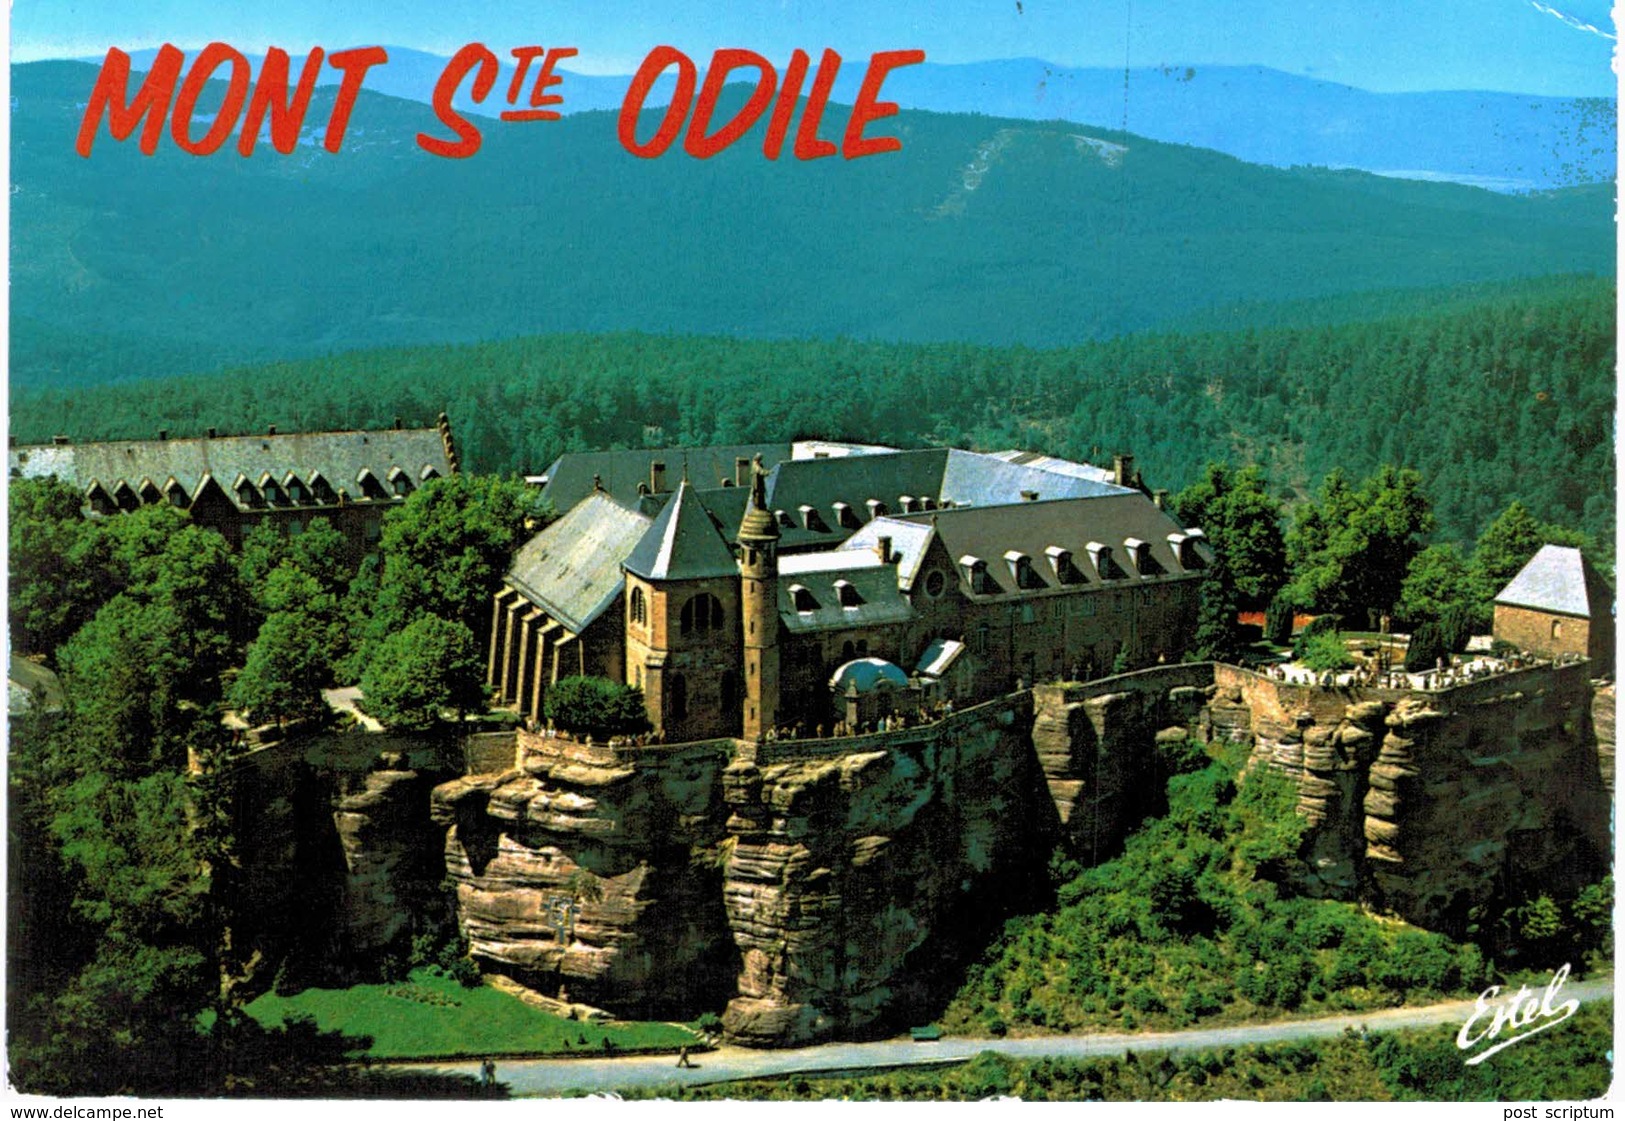 Lot 165-  Mont sainte Odile - 160 cartes